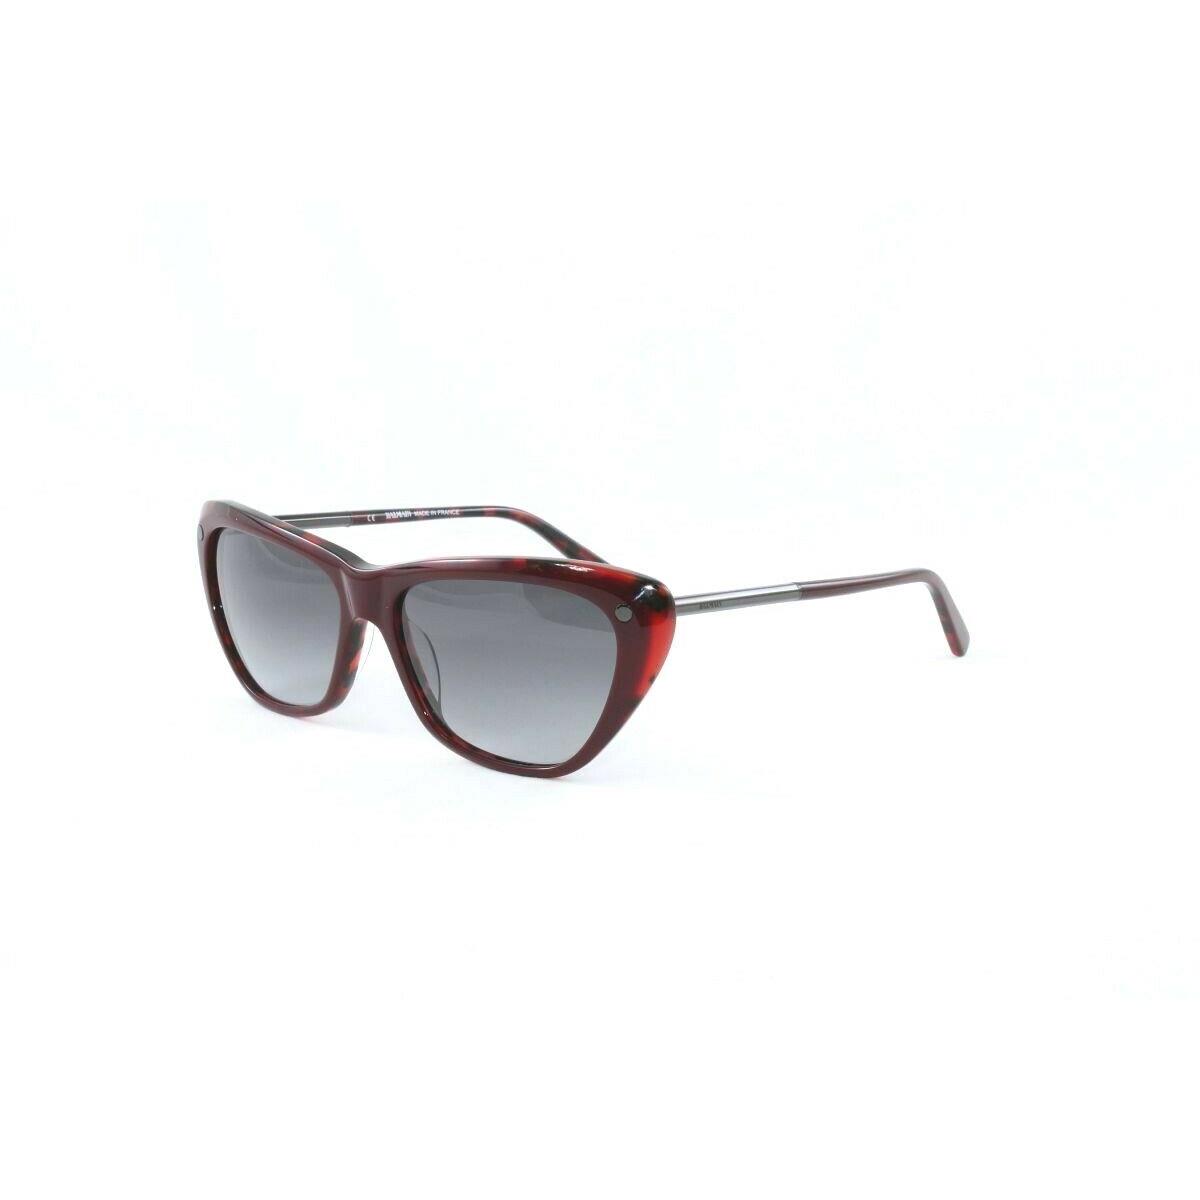 Balmain Women`s Sunglasses BL2069 C03 Red Red Tortoise Grey Grad. Lens 56mm